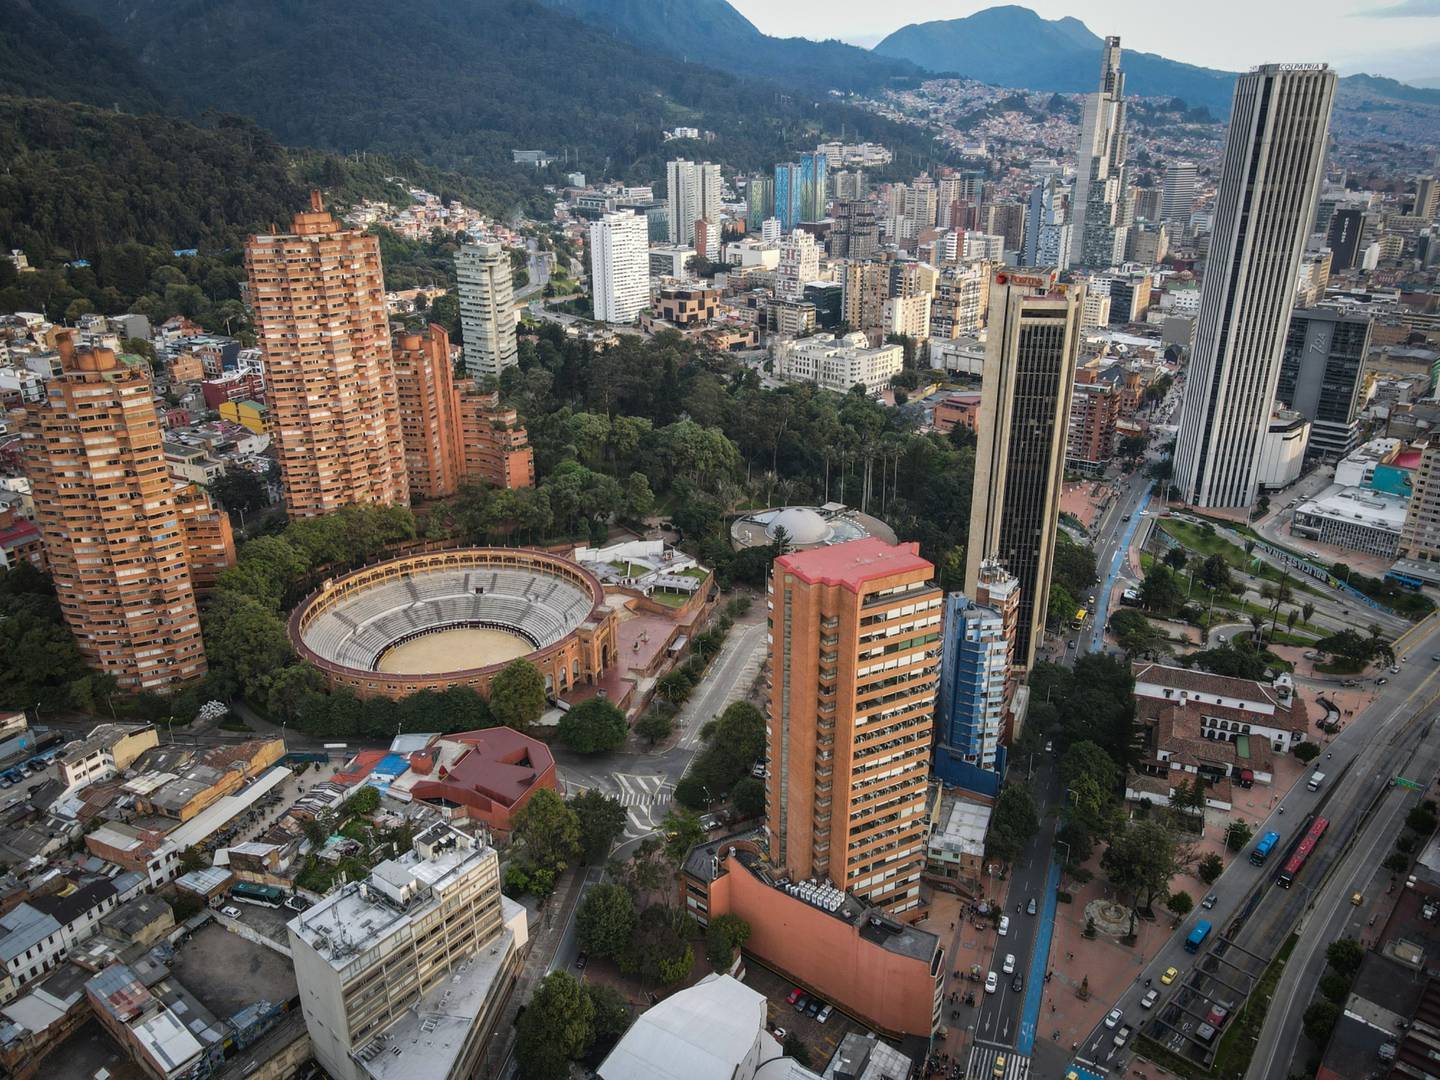 Edificios en Bogotá, Colombia, el sábado 9 de abril de 2022.dfd